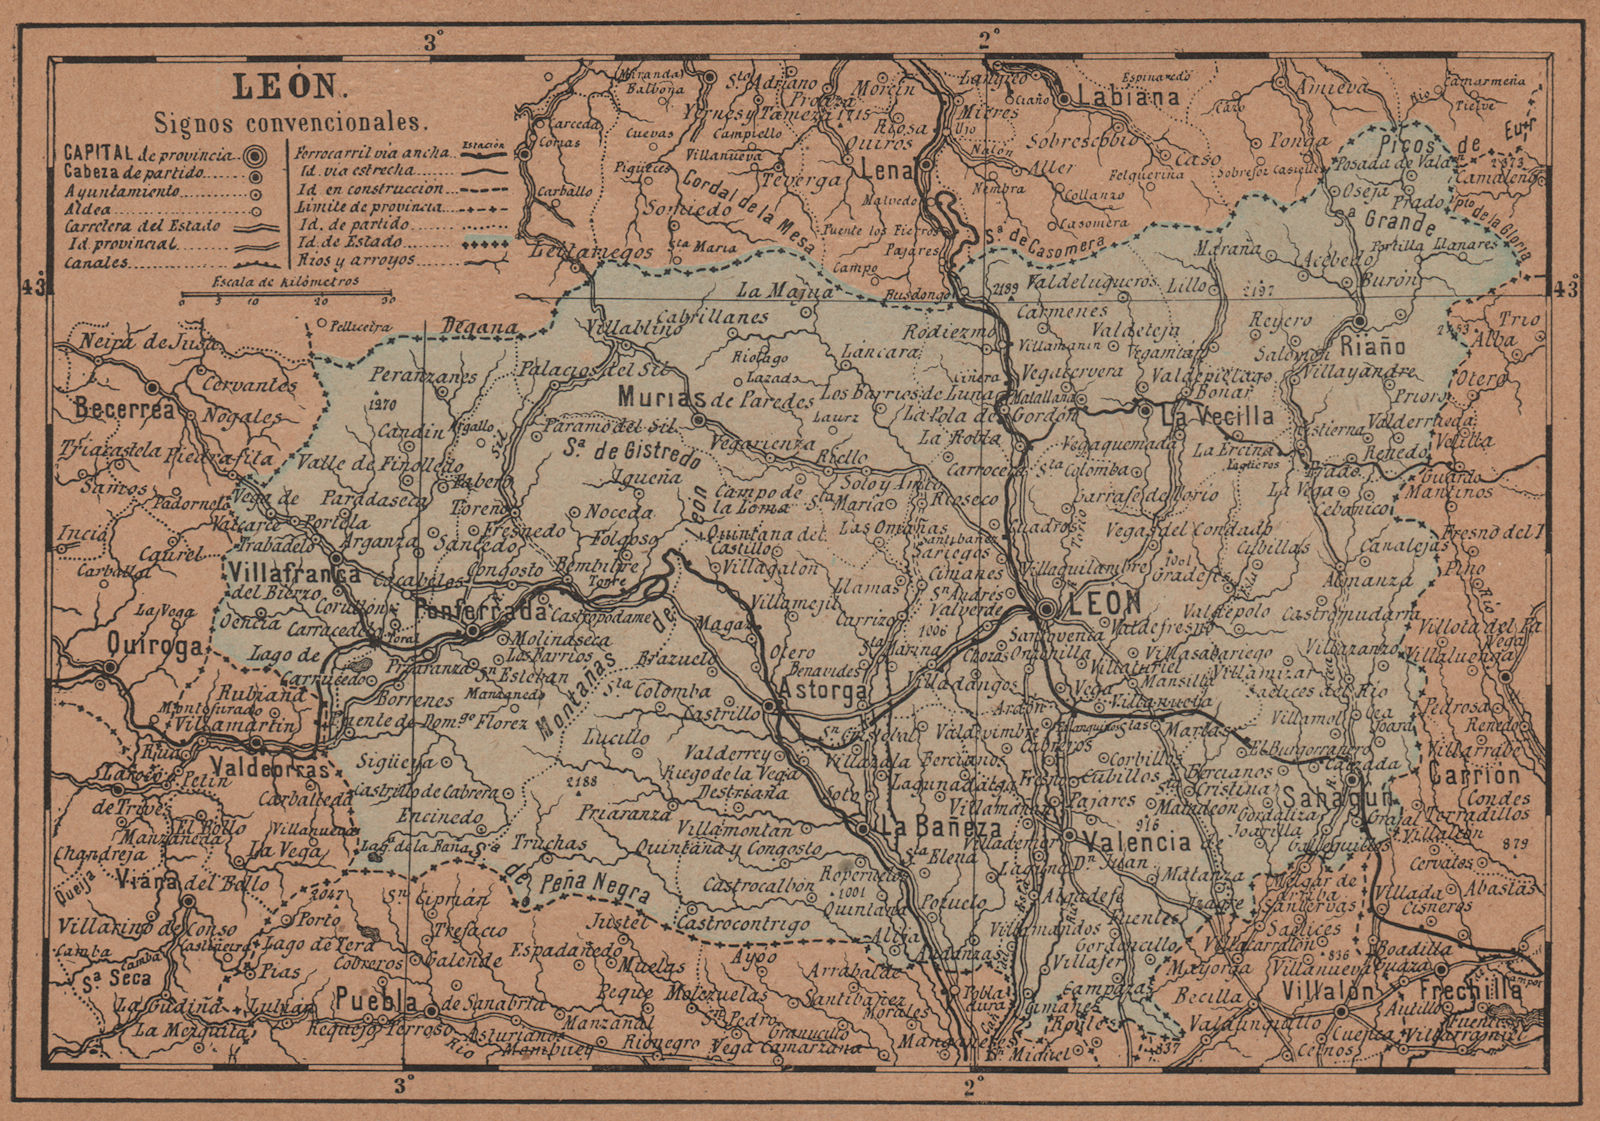 Associate Product LEÓN. Leon. Castilla y León. Mapa antiguo de la provincia 1905 old antique